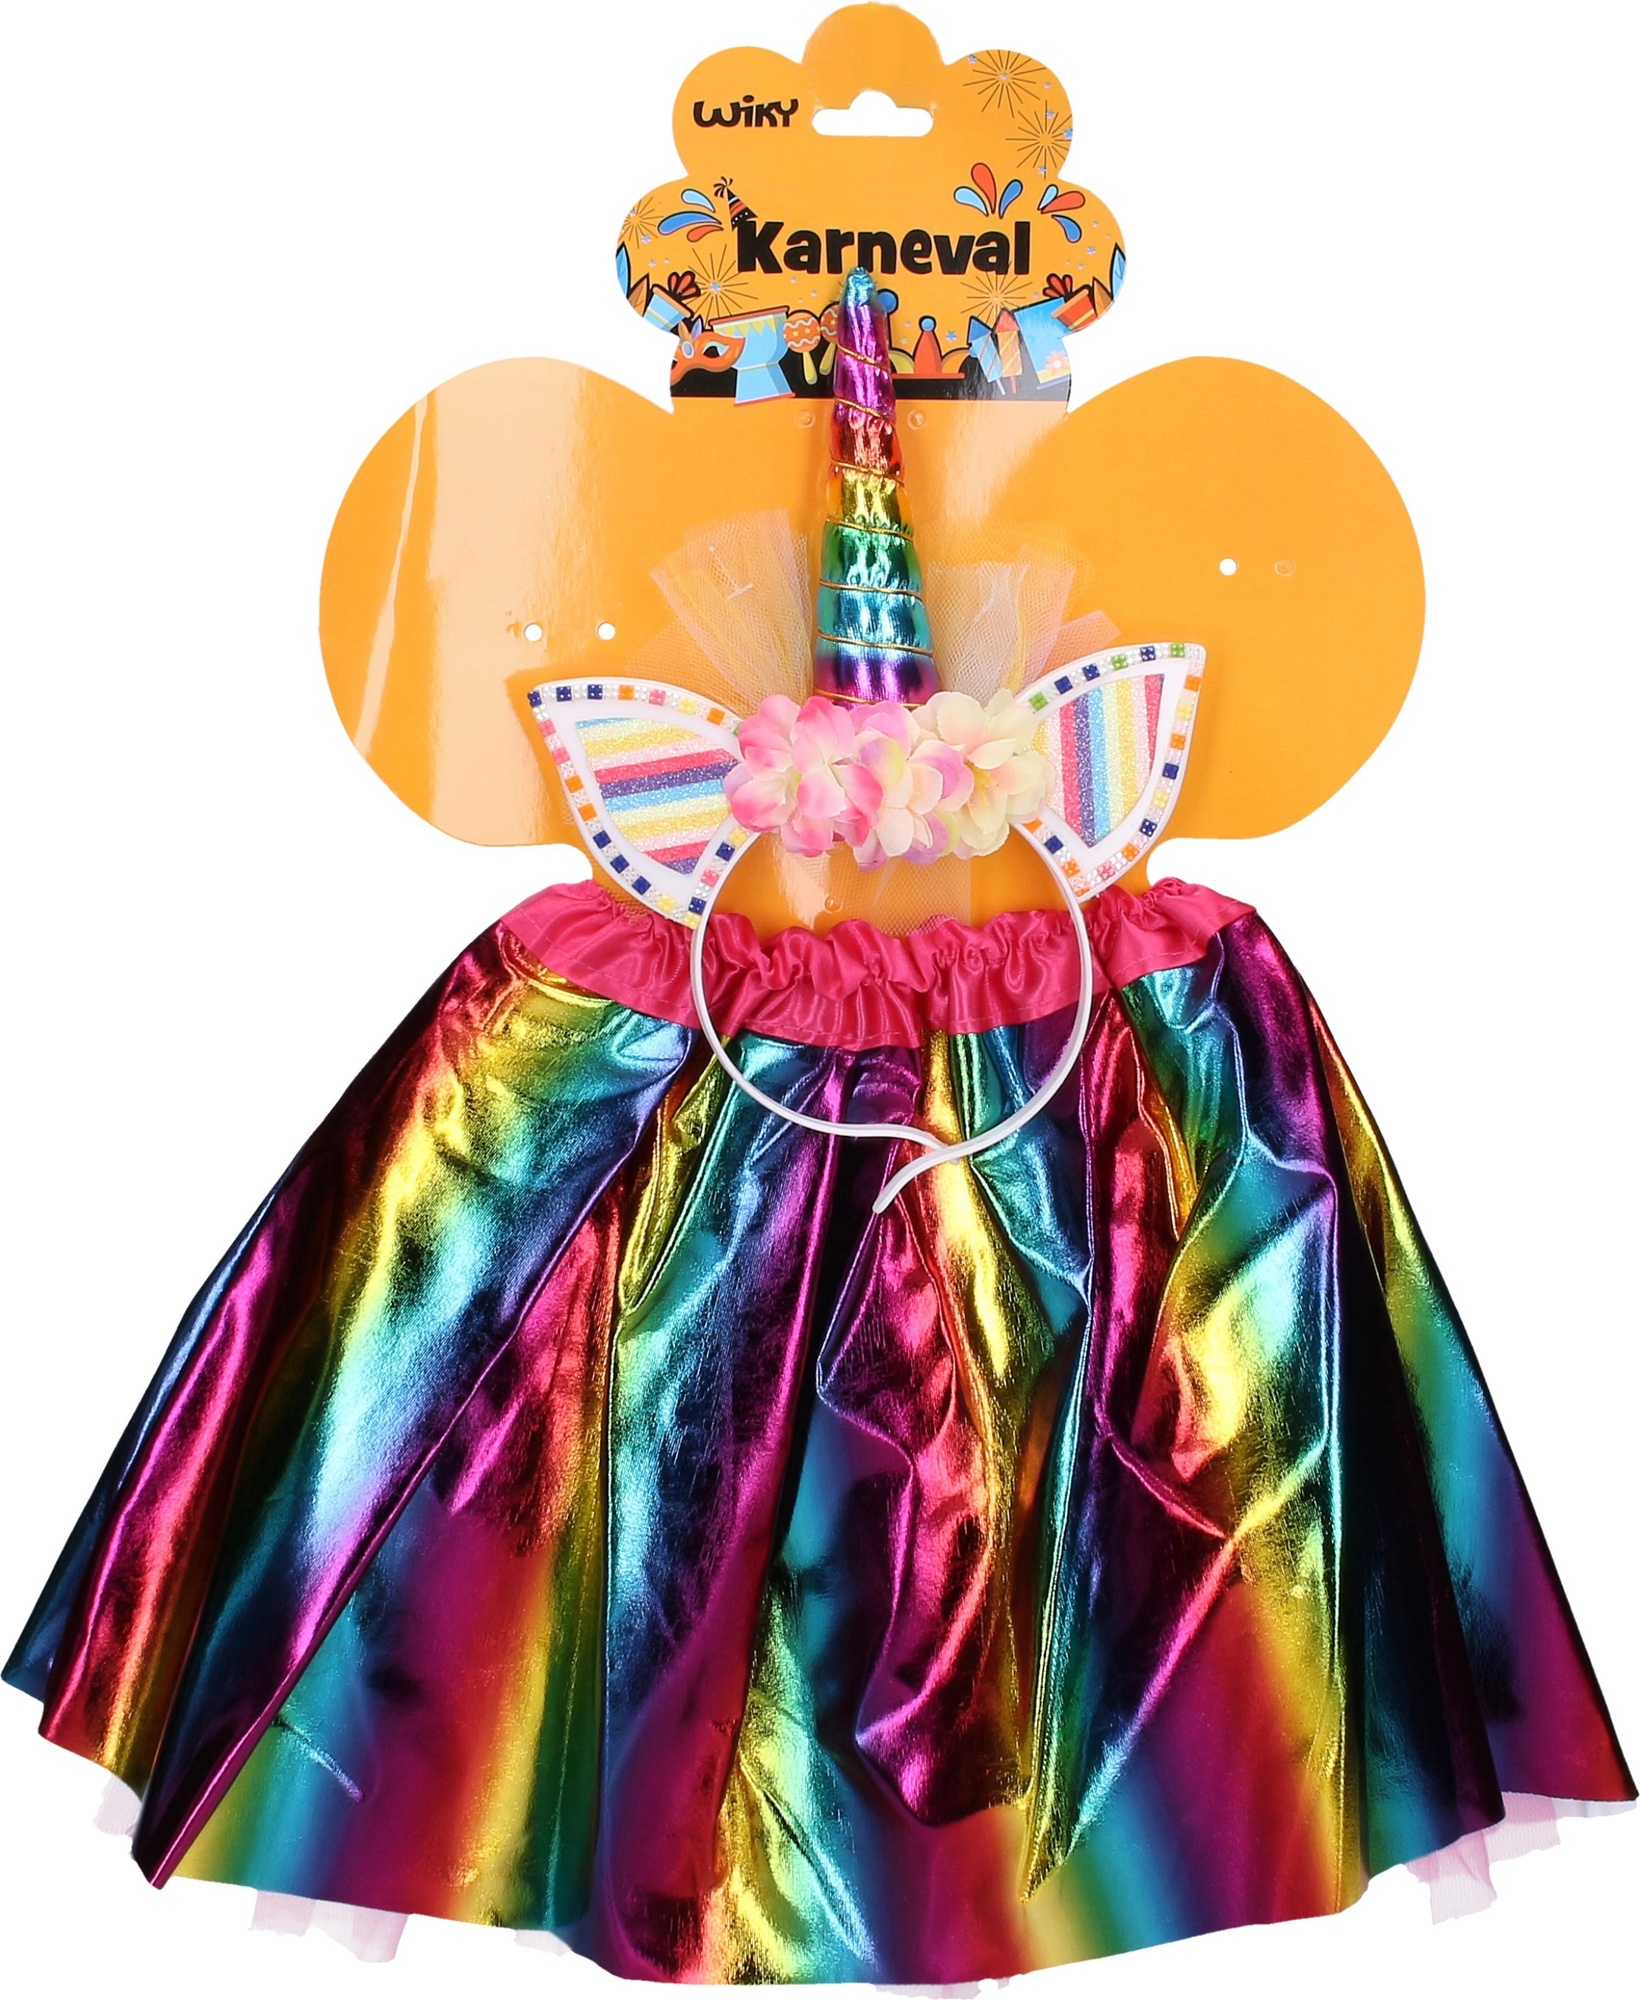 Costume di Carnevale da bambino Legler - Unicorno, costume per bambini